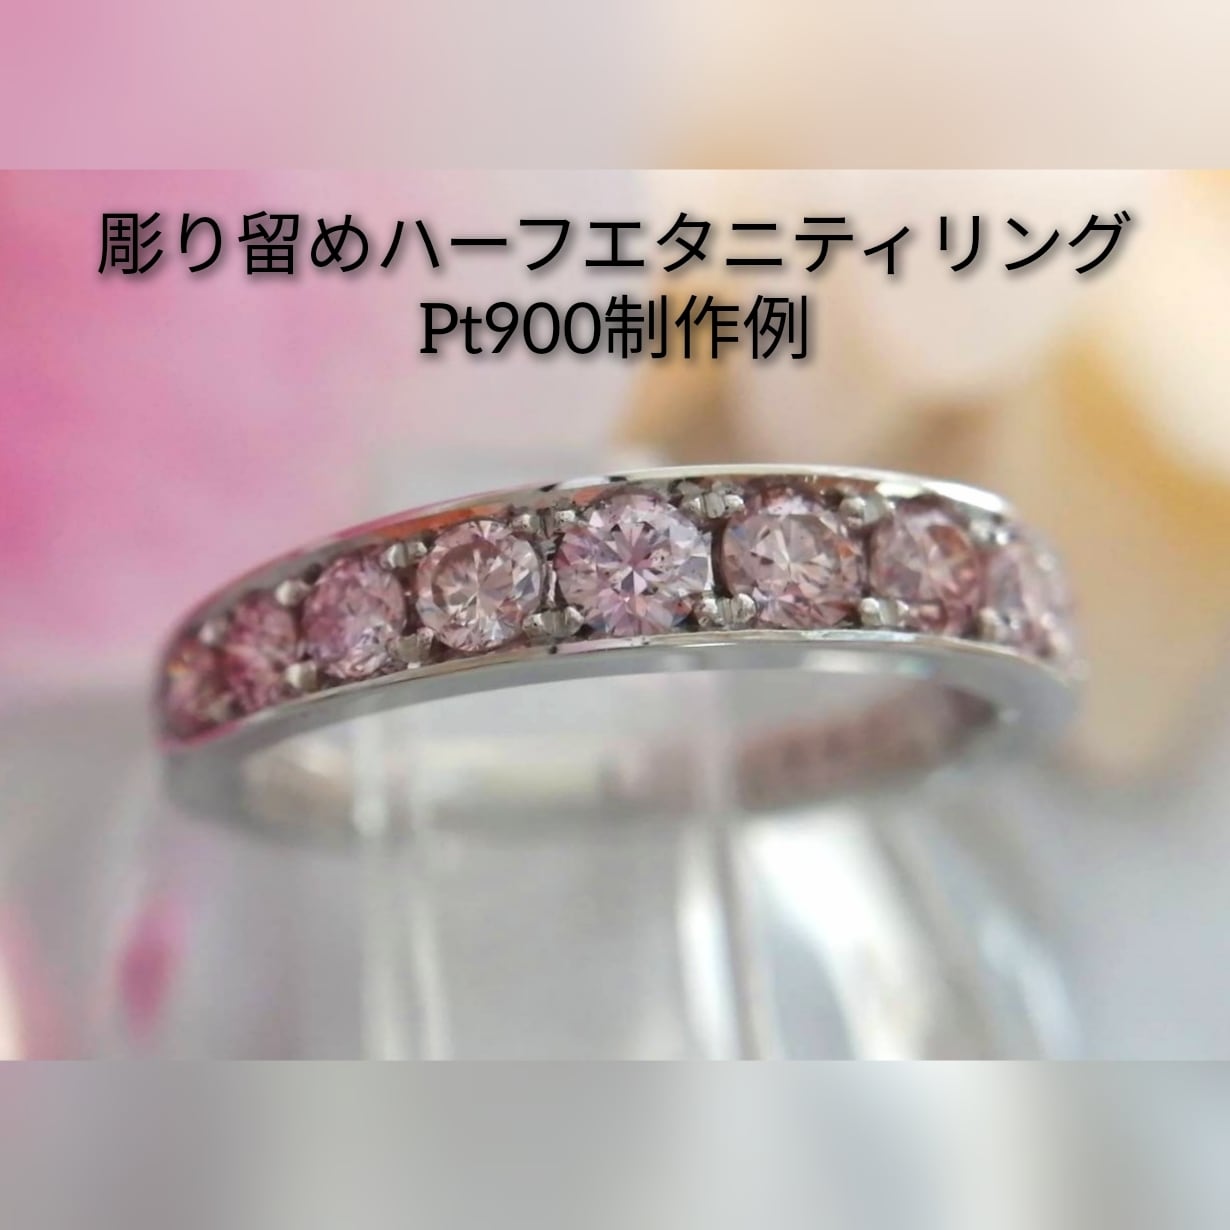 ピンクダイヤモンド ミル打ち K18 ハーフエタニティリング 購入新商品